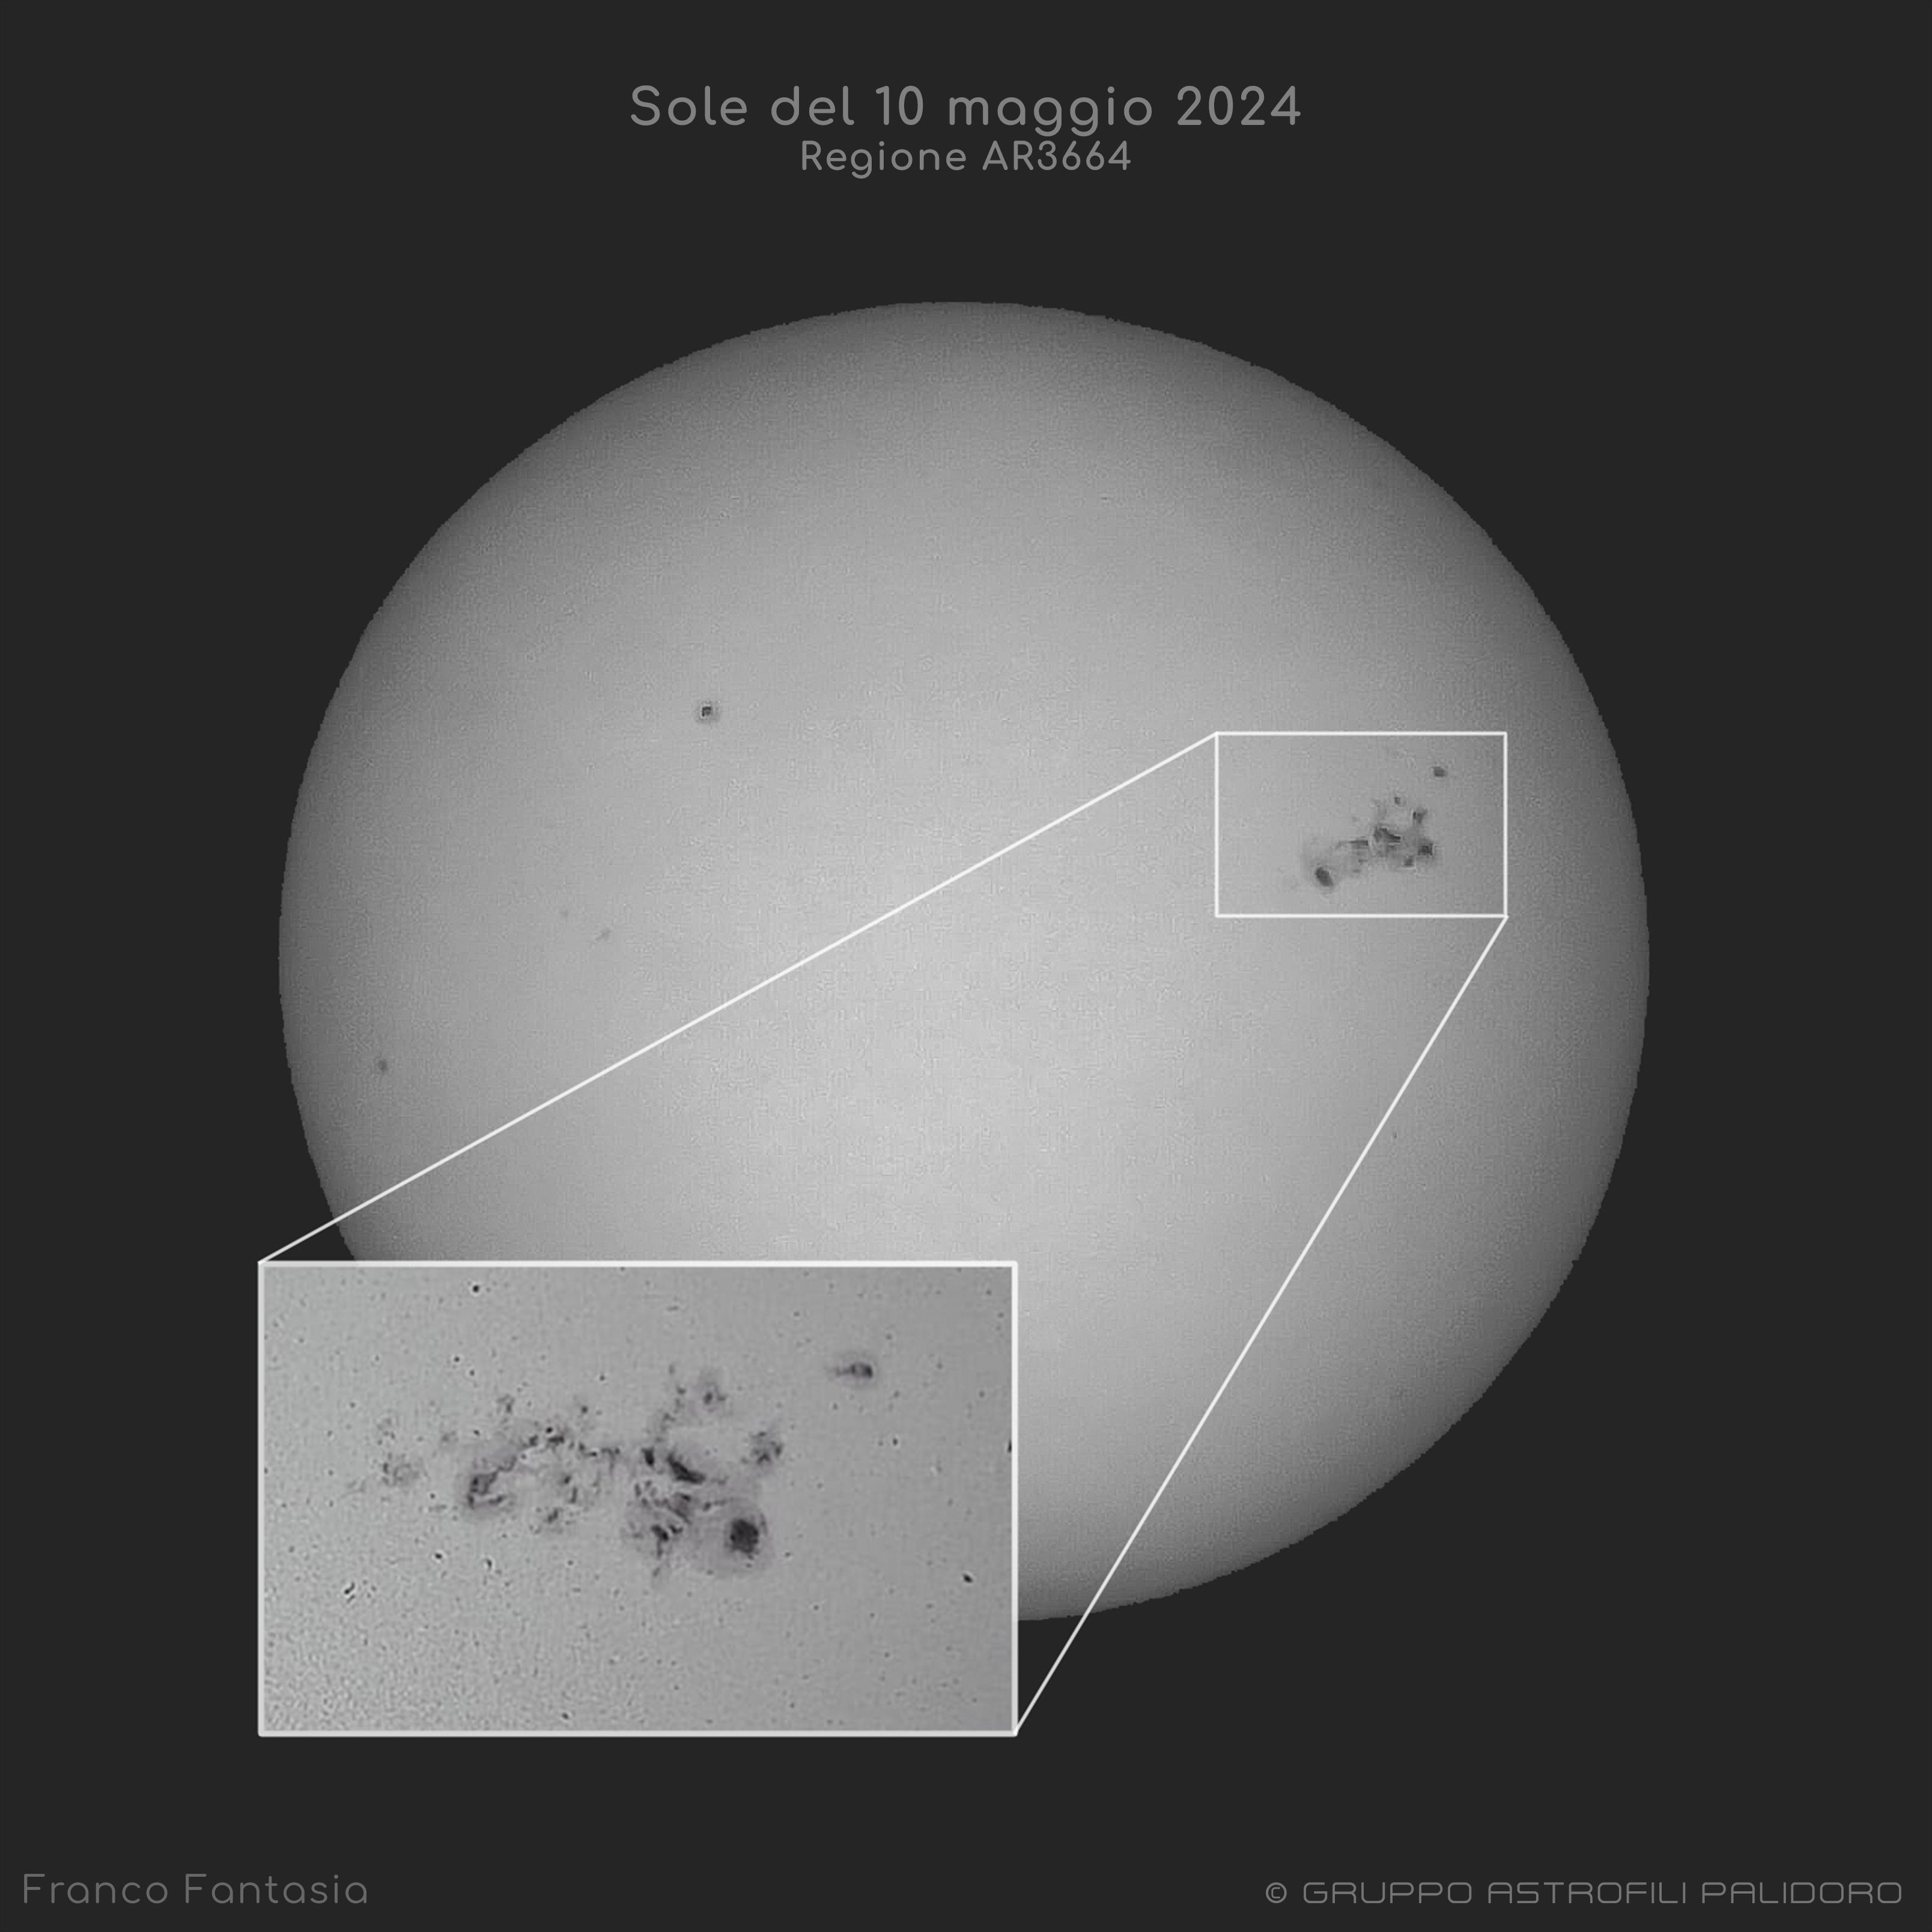 الشمس بالأبيض والأسود تُظهِر بُقعاً شمسيّة داكنة في أقصى اليمين. كُبِّرَت مجموعة البقع الشمسيّة الكبيرة في صورة مُضمّنة أسفل اليسار.